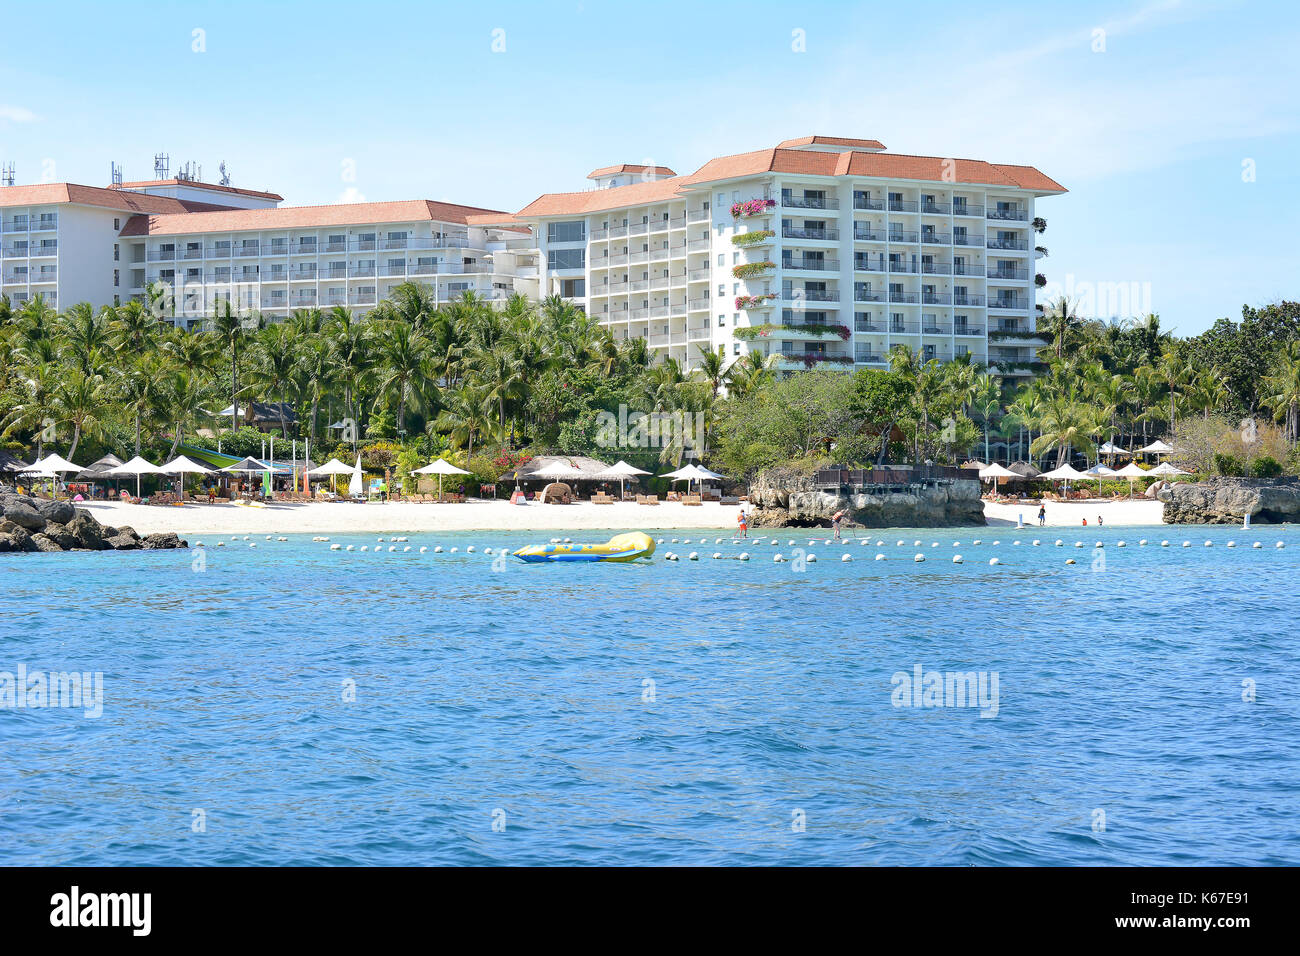 Cebu, Filippine - Aprile 5, 2016: shangri la Mactan Resort e Spa dall'acqua. Il resort di lusso dispone di un santuario marino. Foto Stock